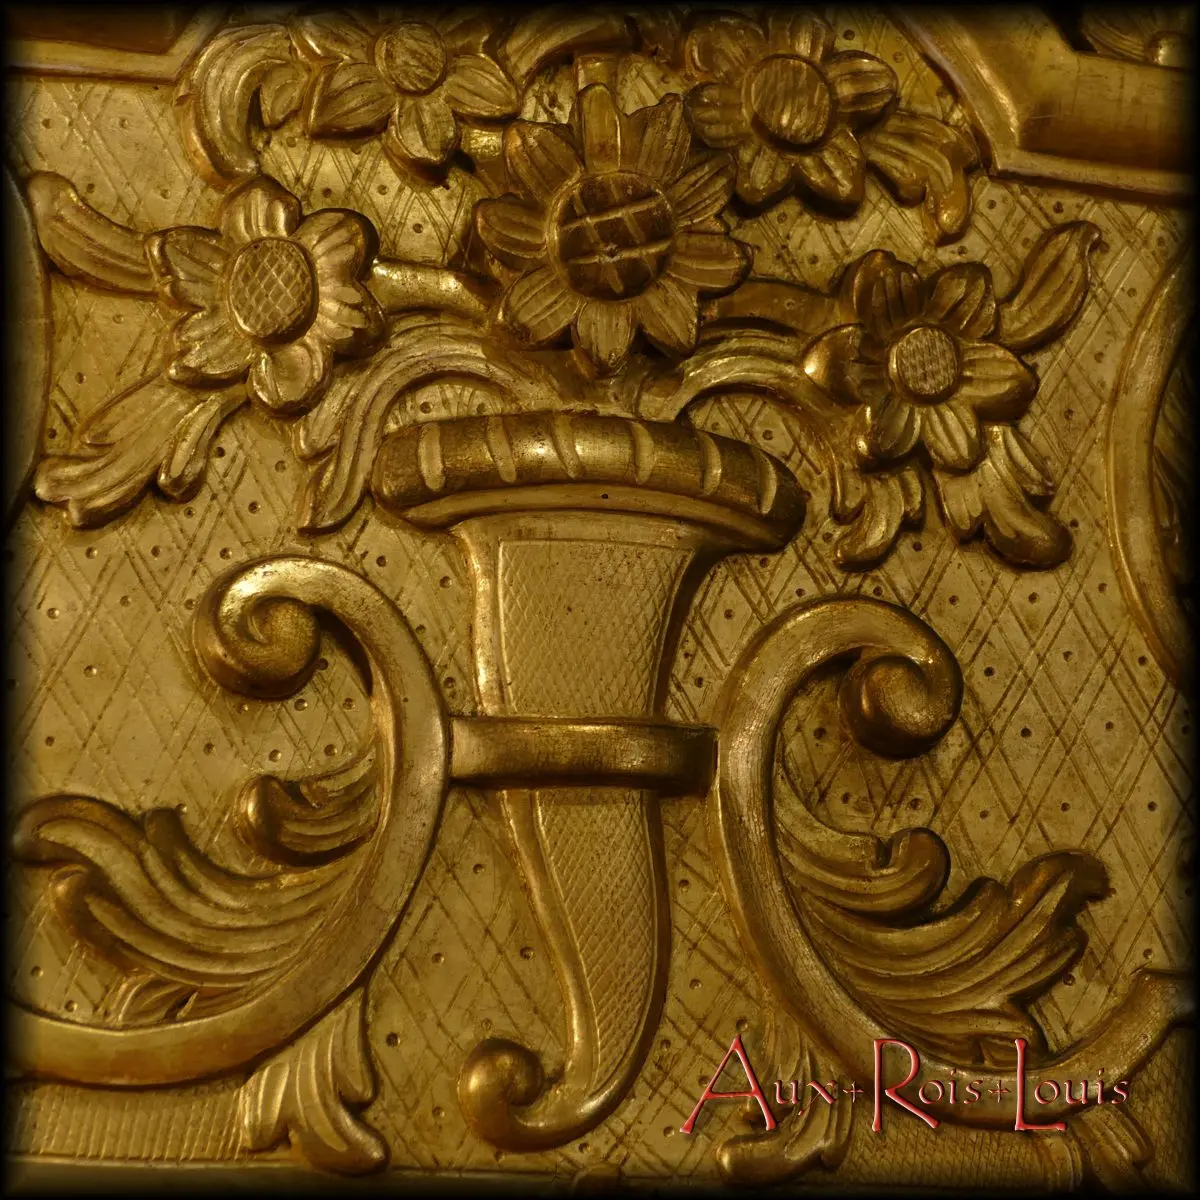 Saisissante par son relief et sa taille, une corne d'abondance, symbole de fécondité et de fertilité, trône au centre de l'imposant frontispice de ce miroir Louis XV.